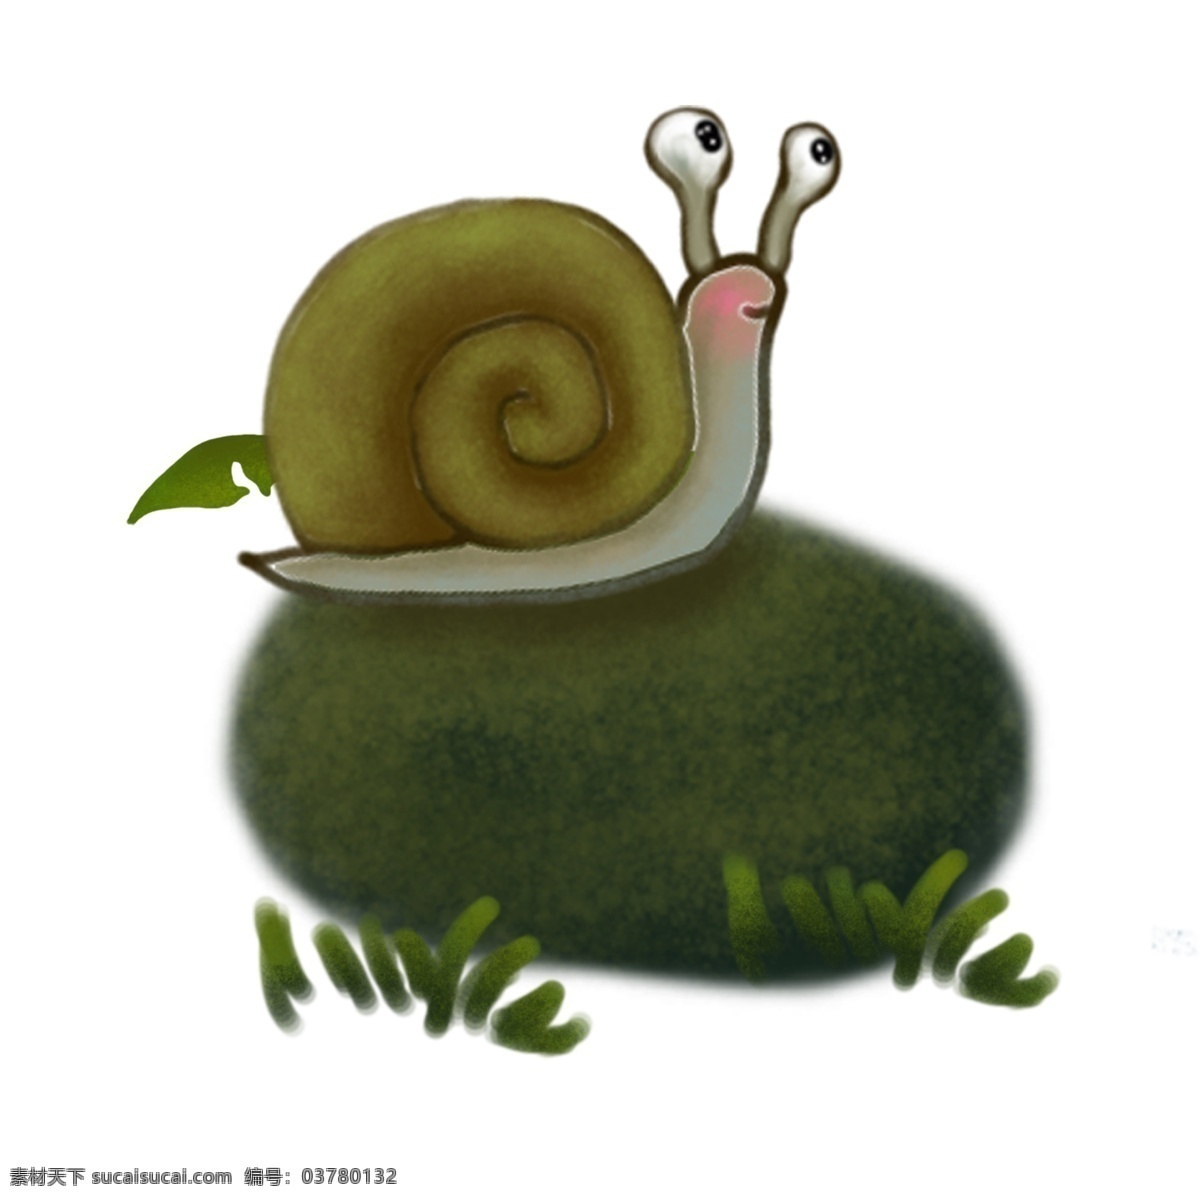 卡通 涂鸦 小 蜗牛 图案 水彩 插画 创意 简约 小清新 手绘 元素 装饰